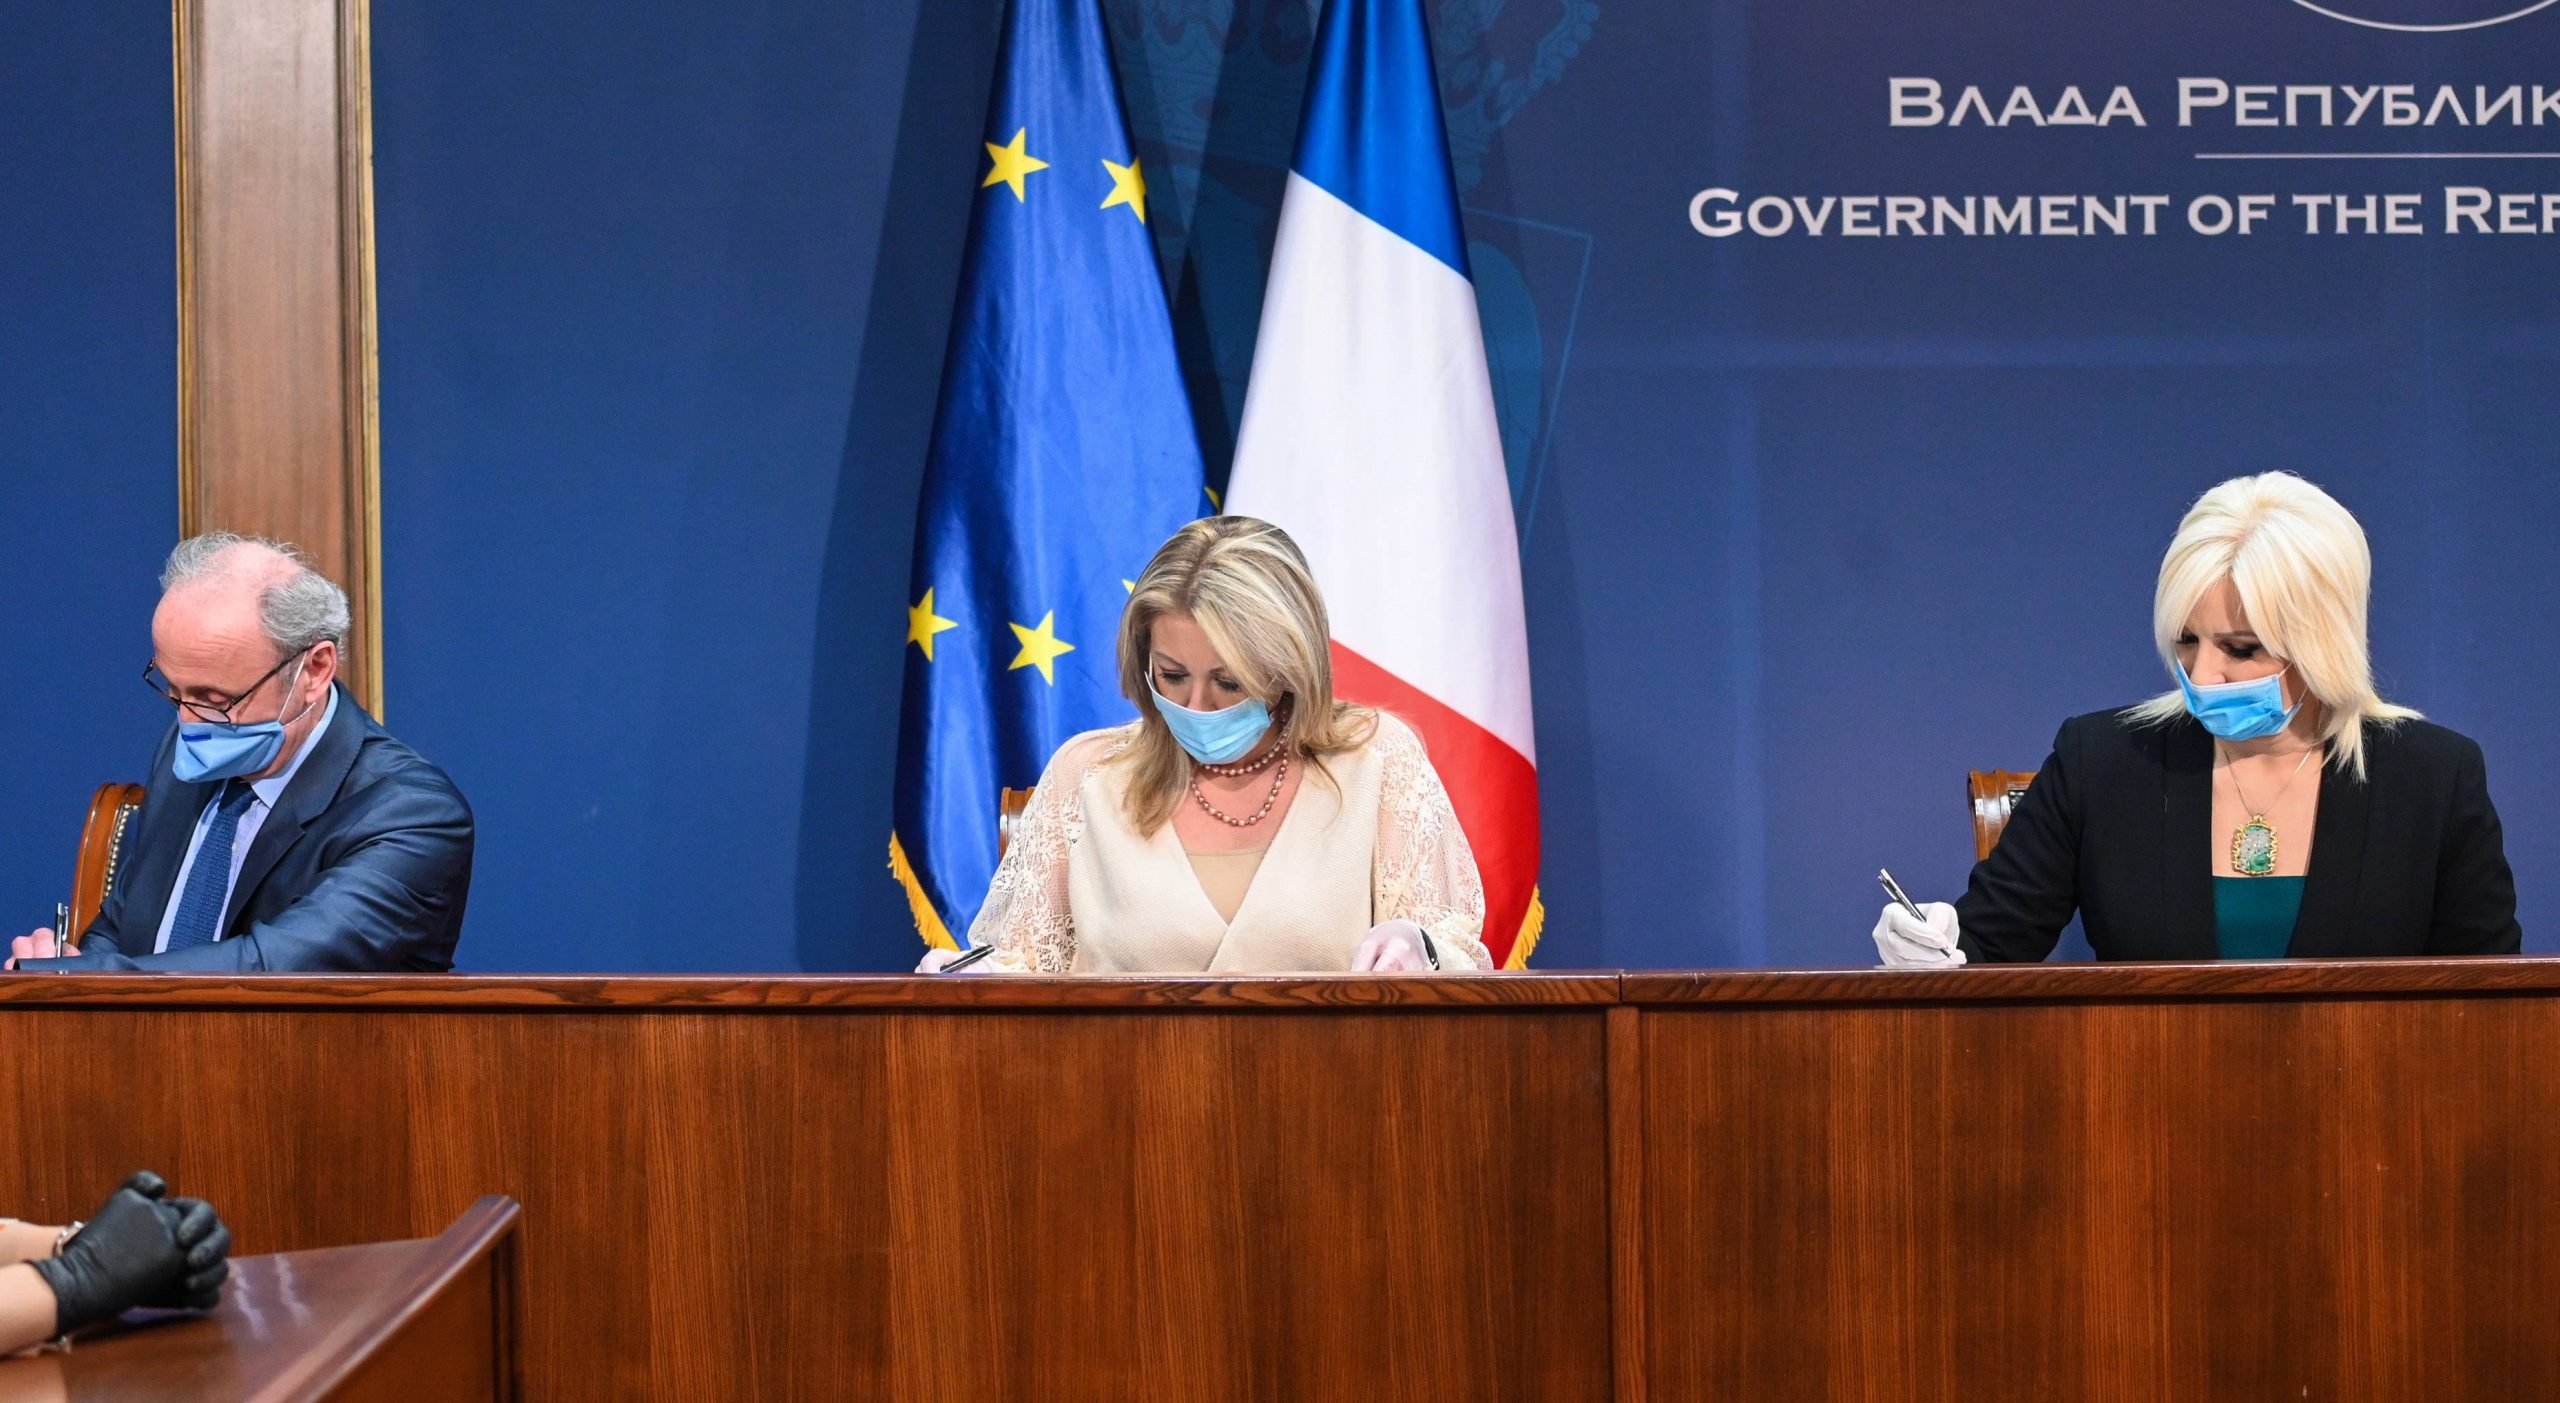 Srbija i Francuska potpisale sporazum o donaciji 8,3 miliona evra za beogradski metro 1